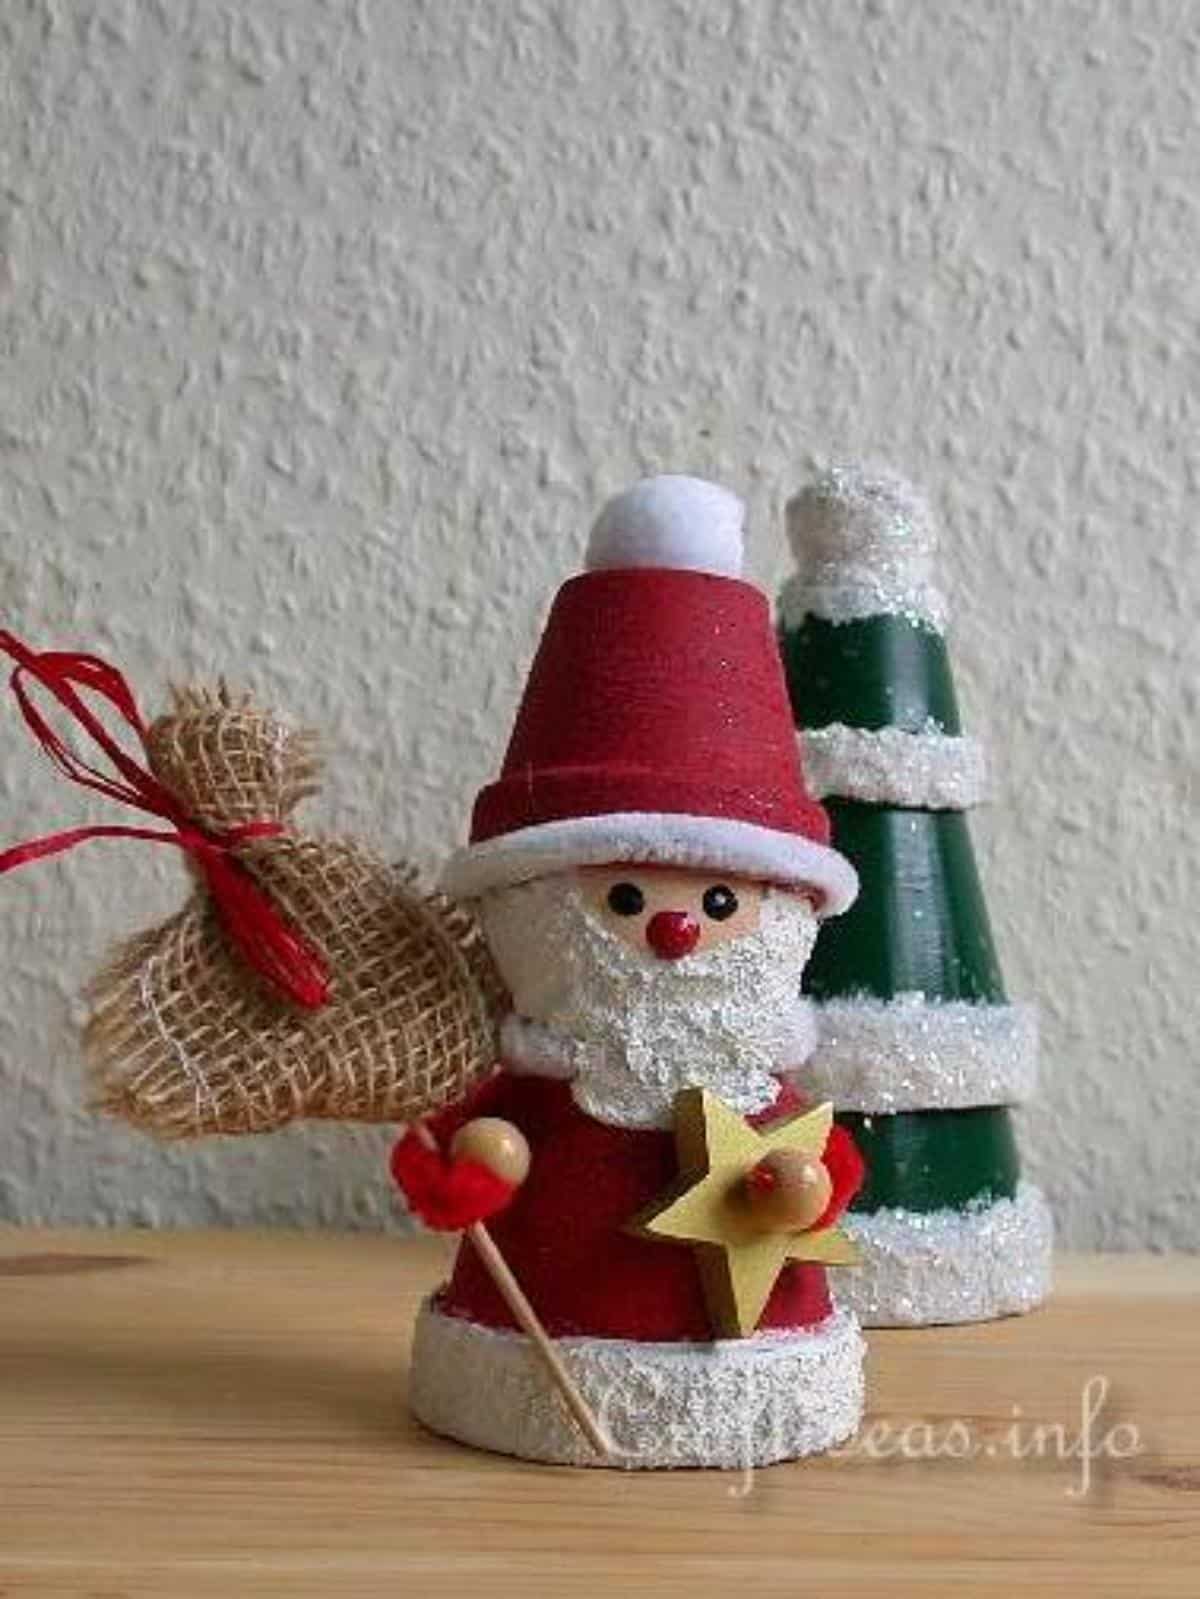 Whimsical DIY Clay Pot Santa Claus